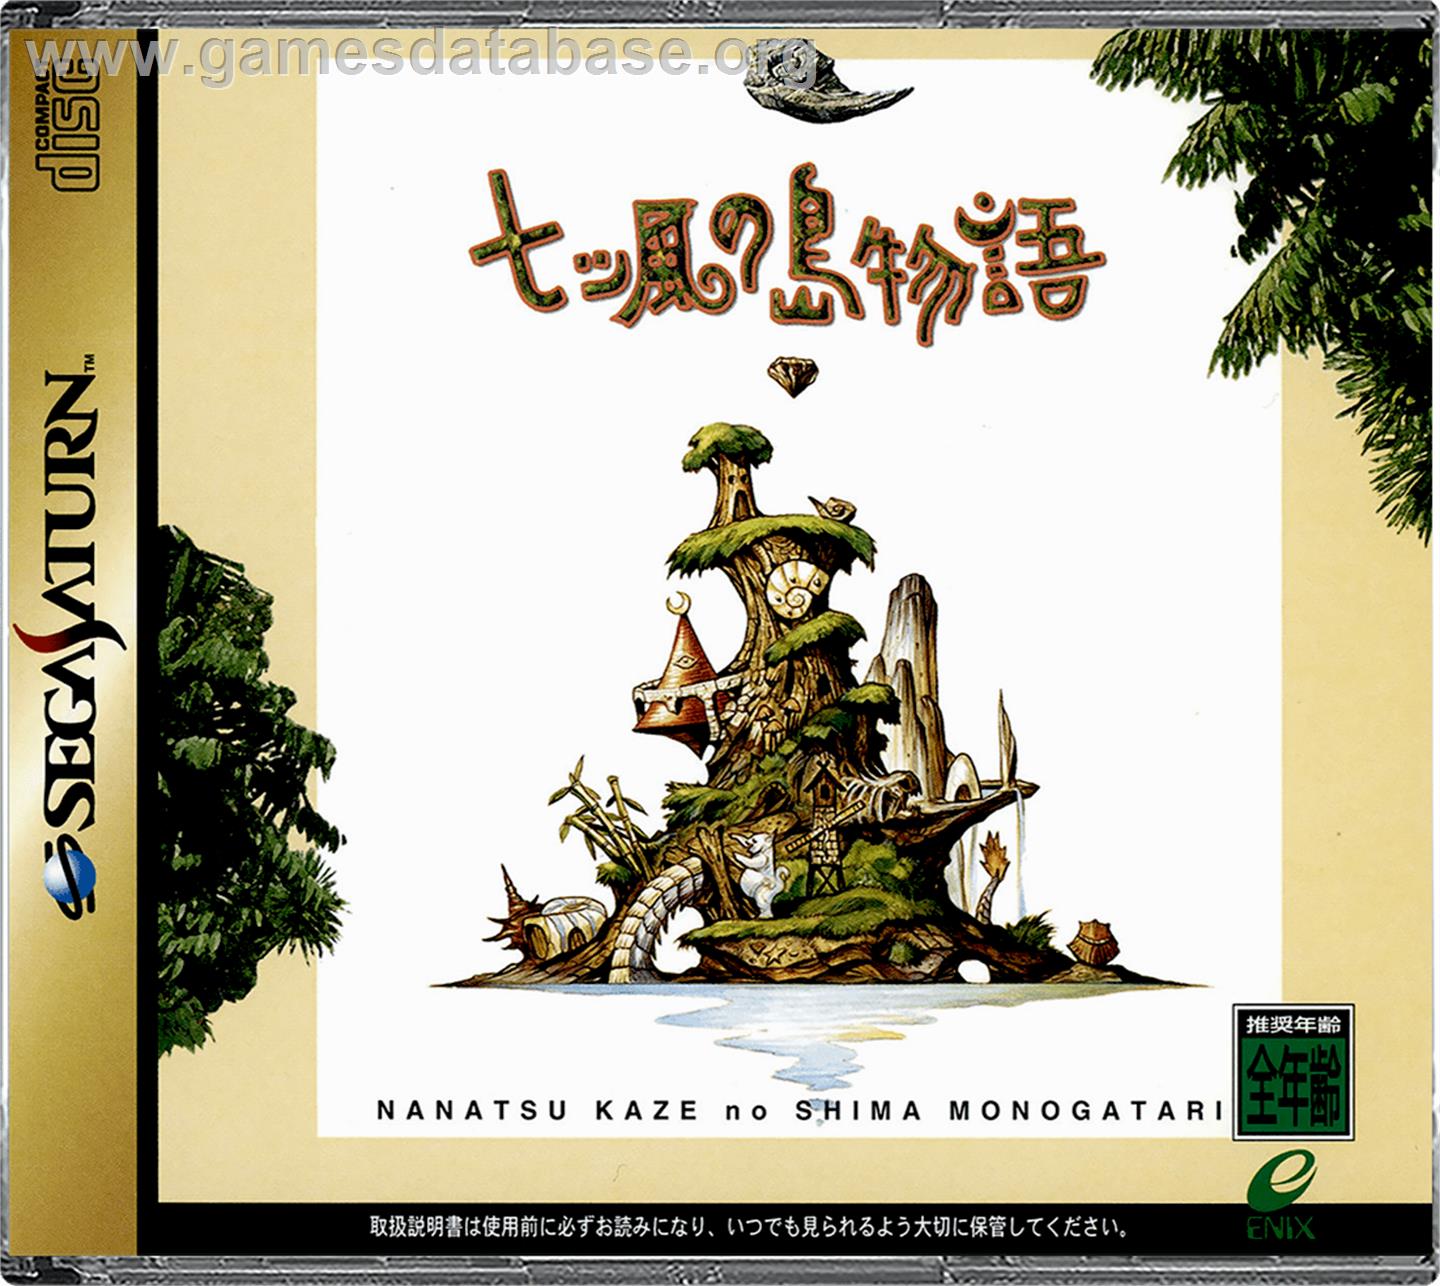 Nanatsu Kaze no Shima Monogatari - Sega Saturn - Artwork - Box